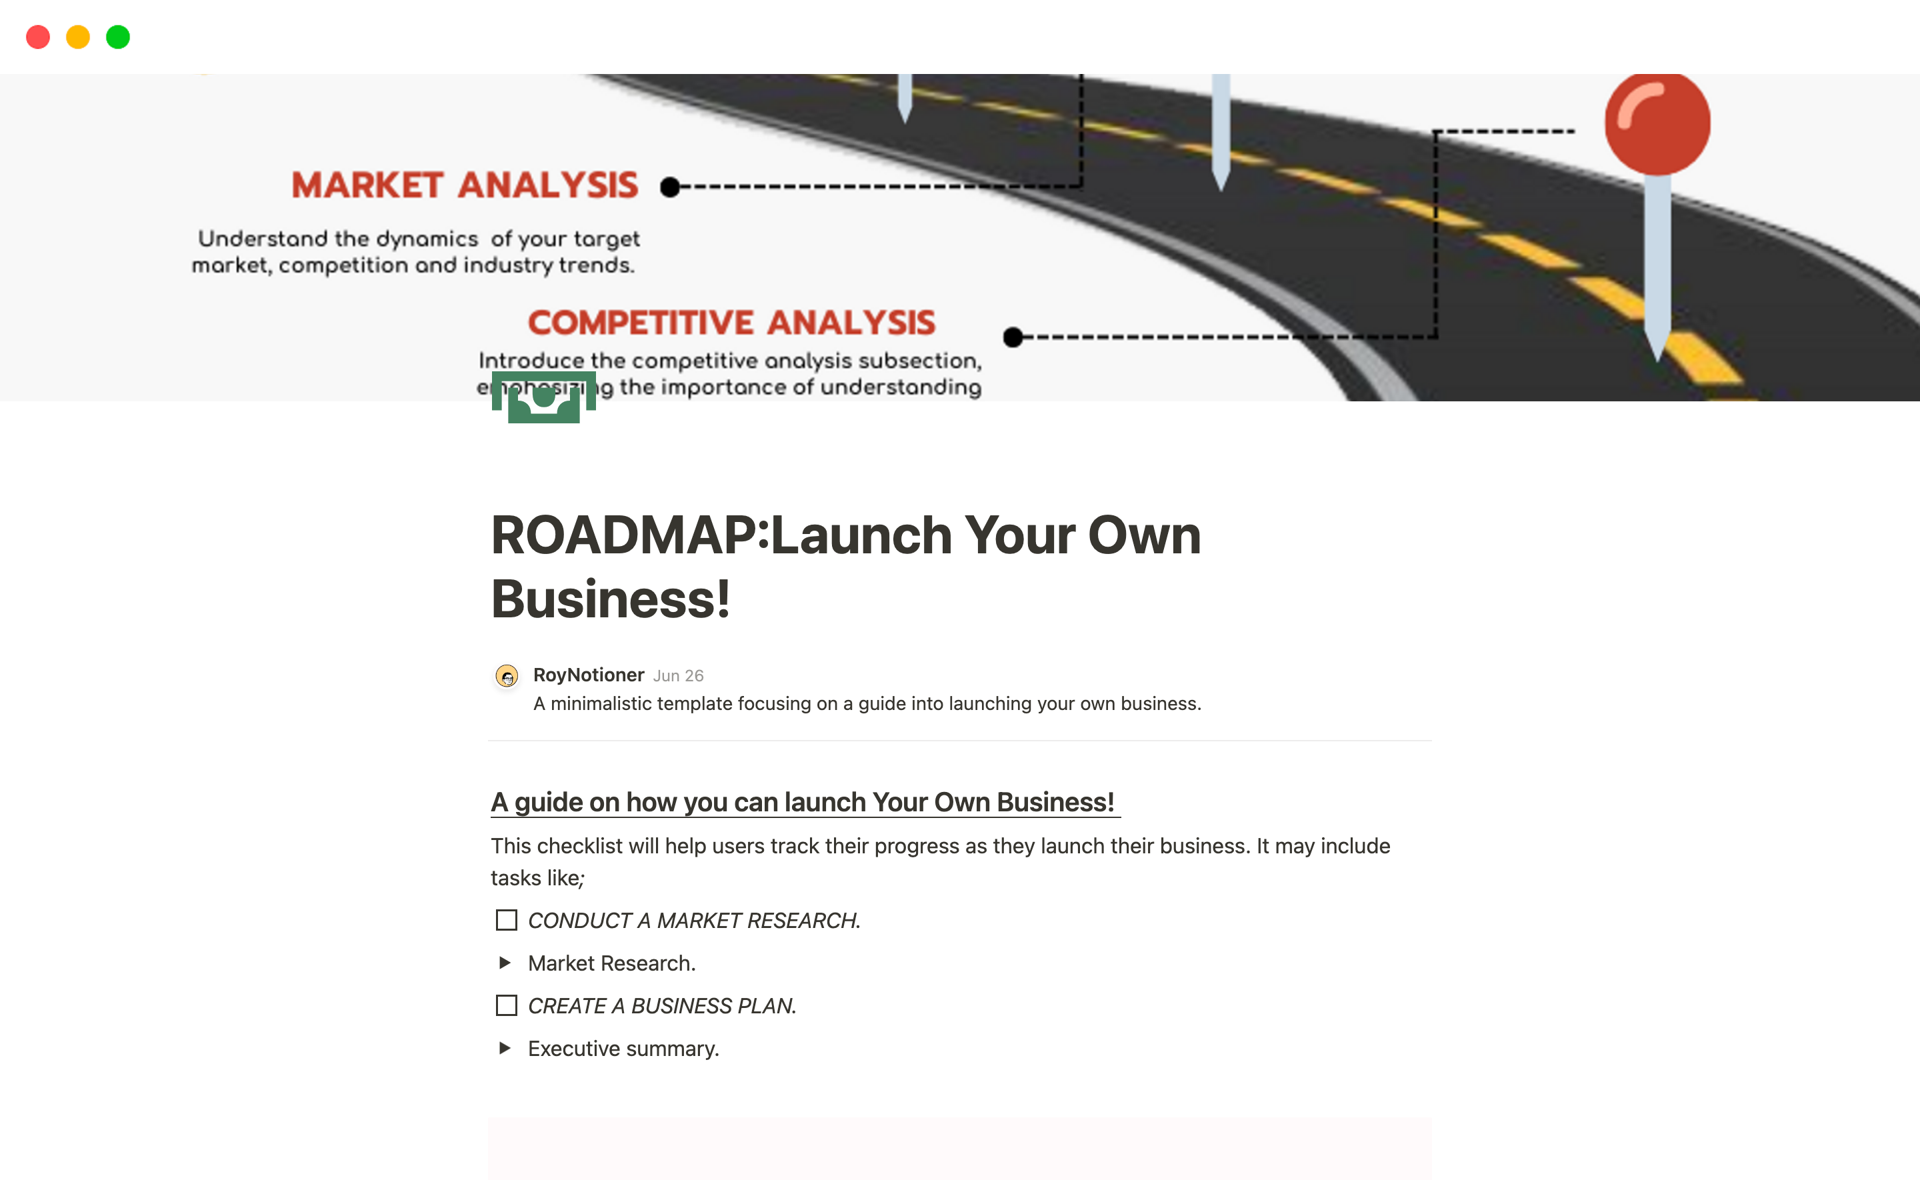 Uma prévia do modelo para ROADMAP:Launch Your Own Business!